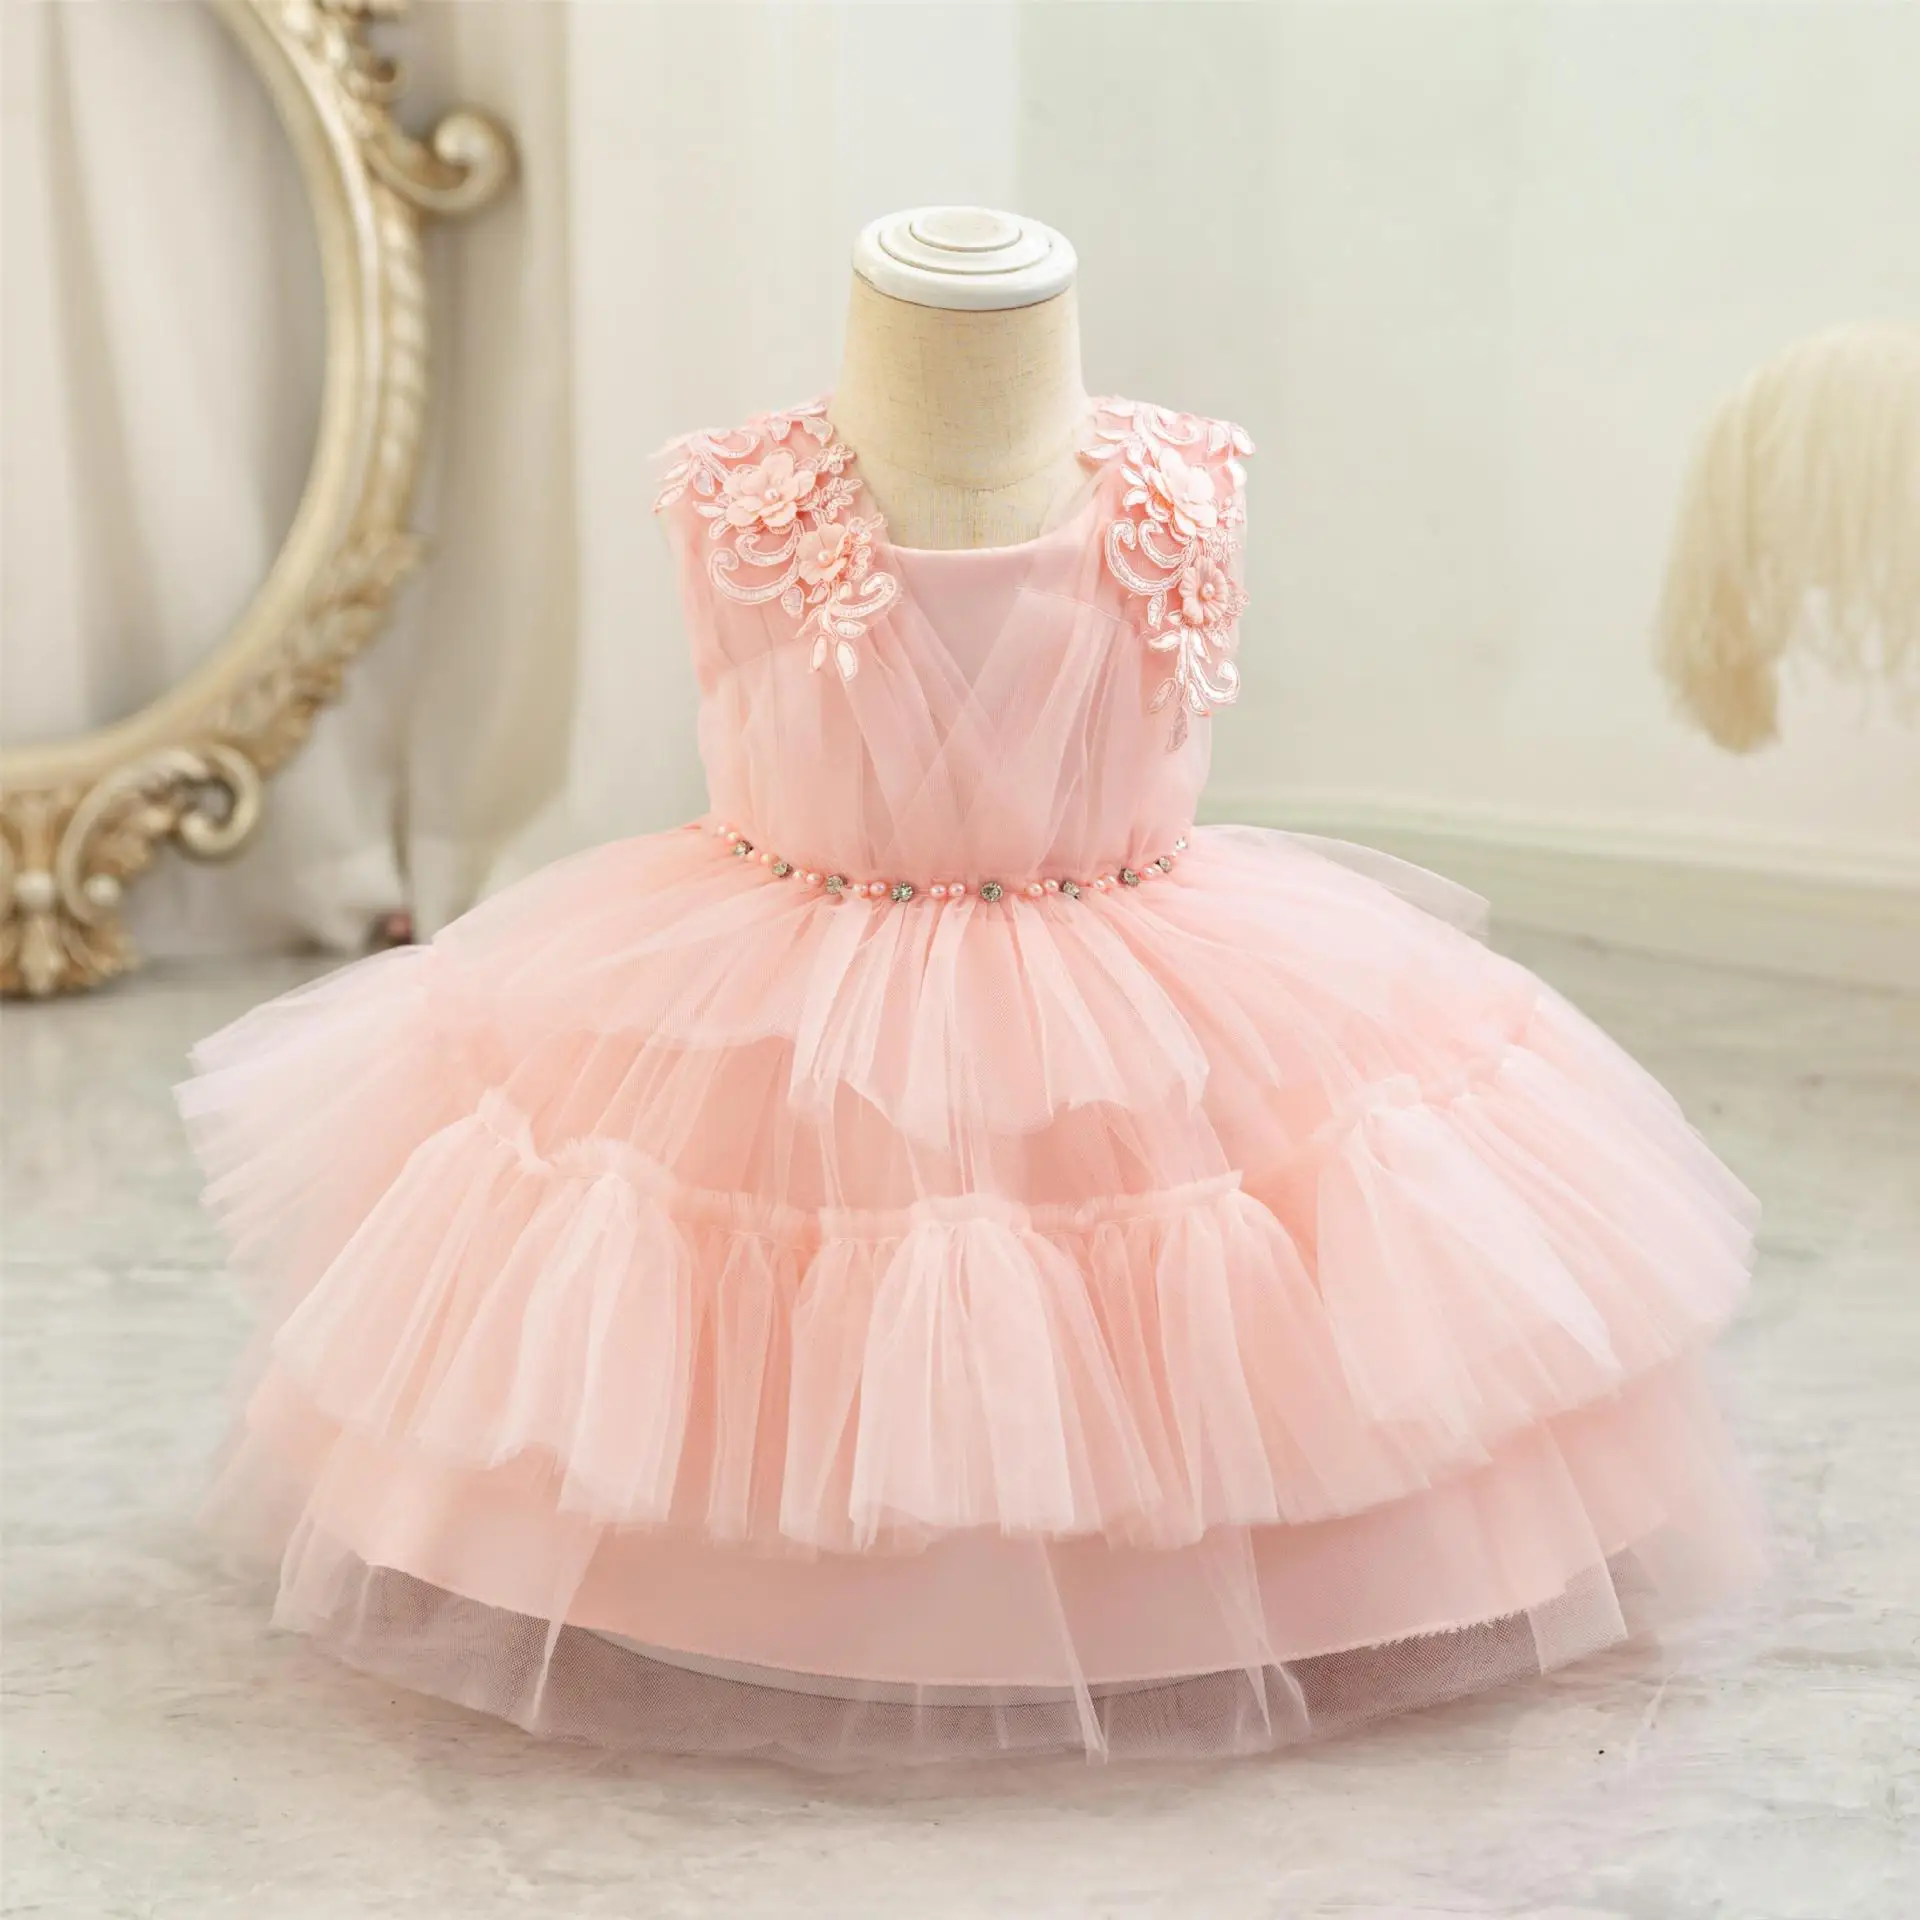 Сетчатое платье принцессы, платье для девочки на первый день рождения, свадебное платье для девочки в цветочек, детское платье для выступления на фортепиано